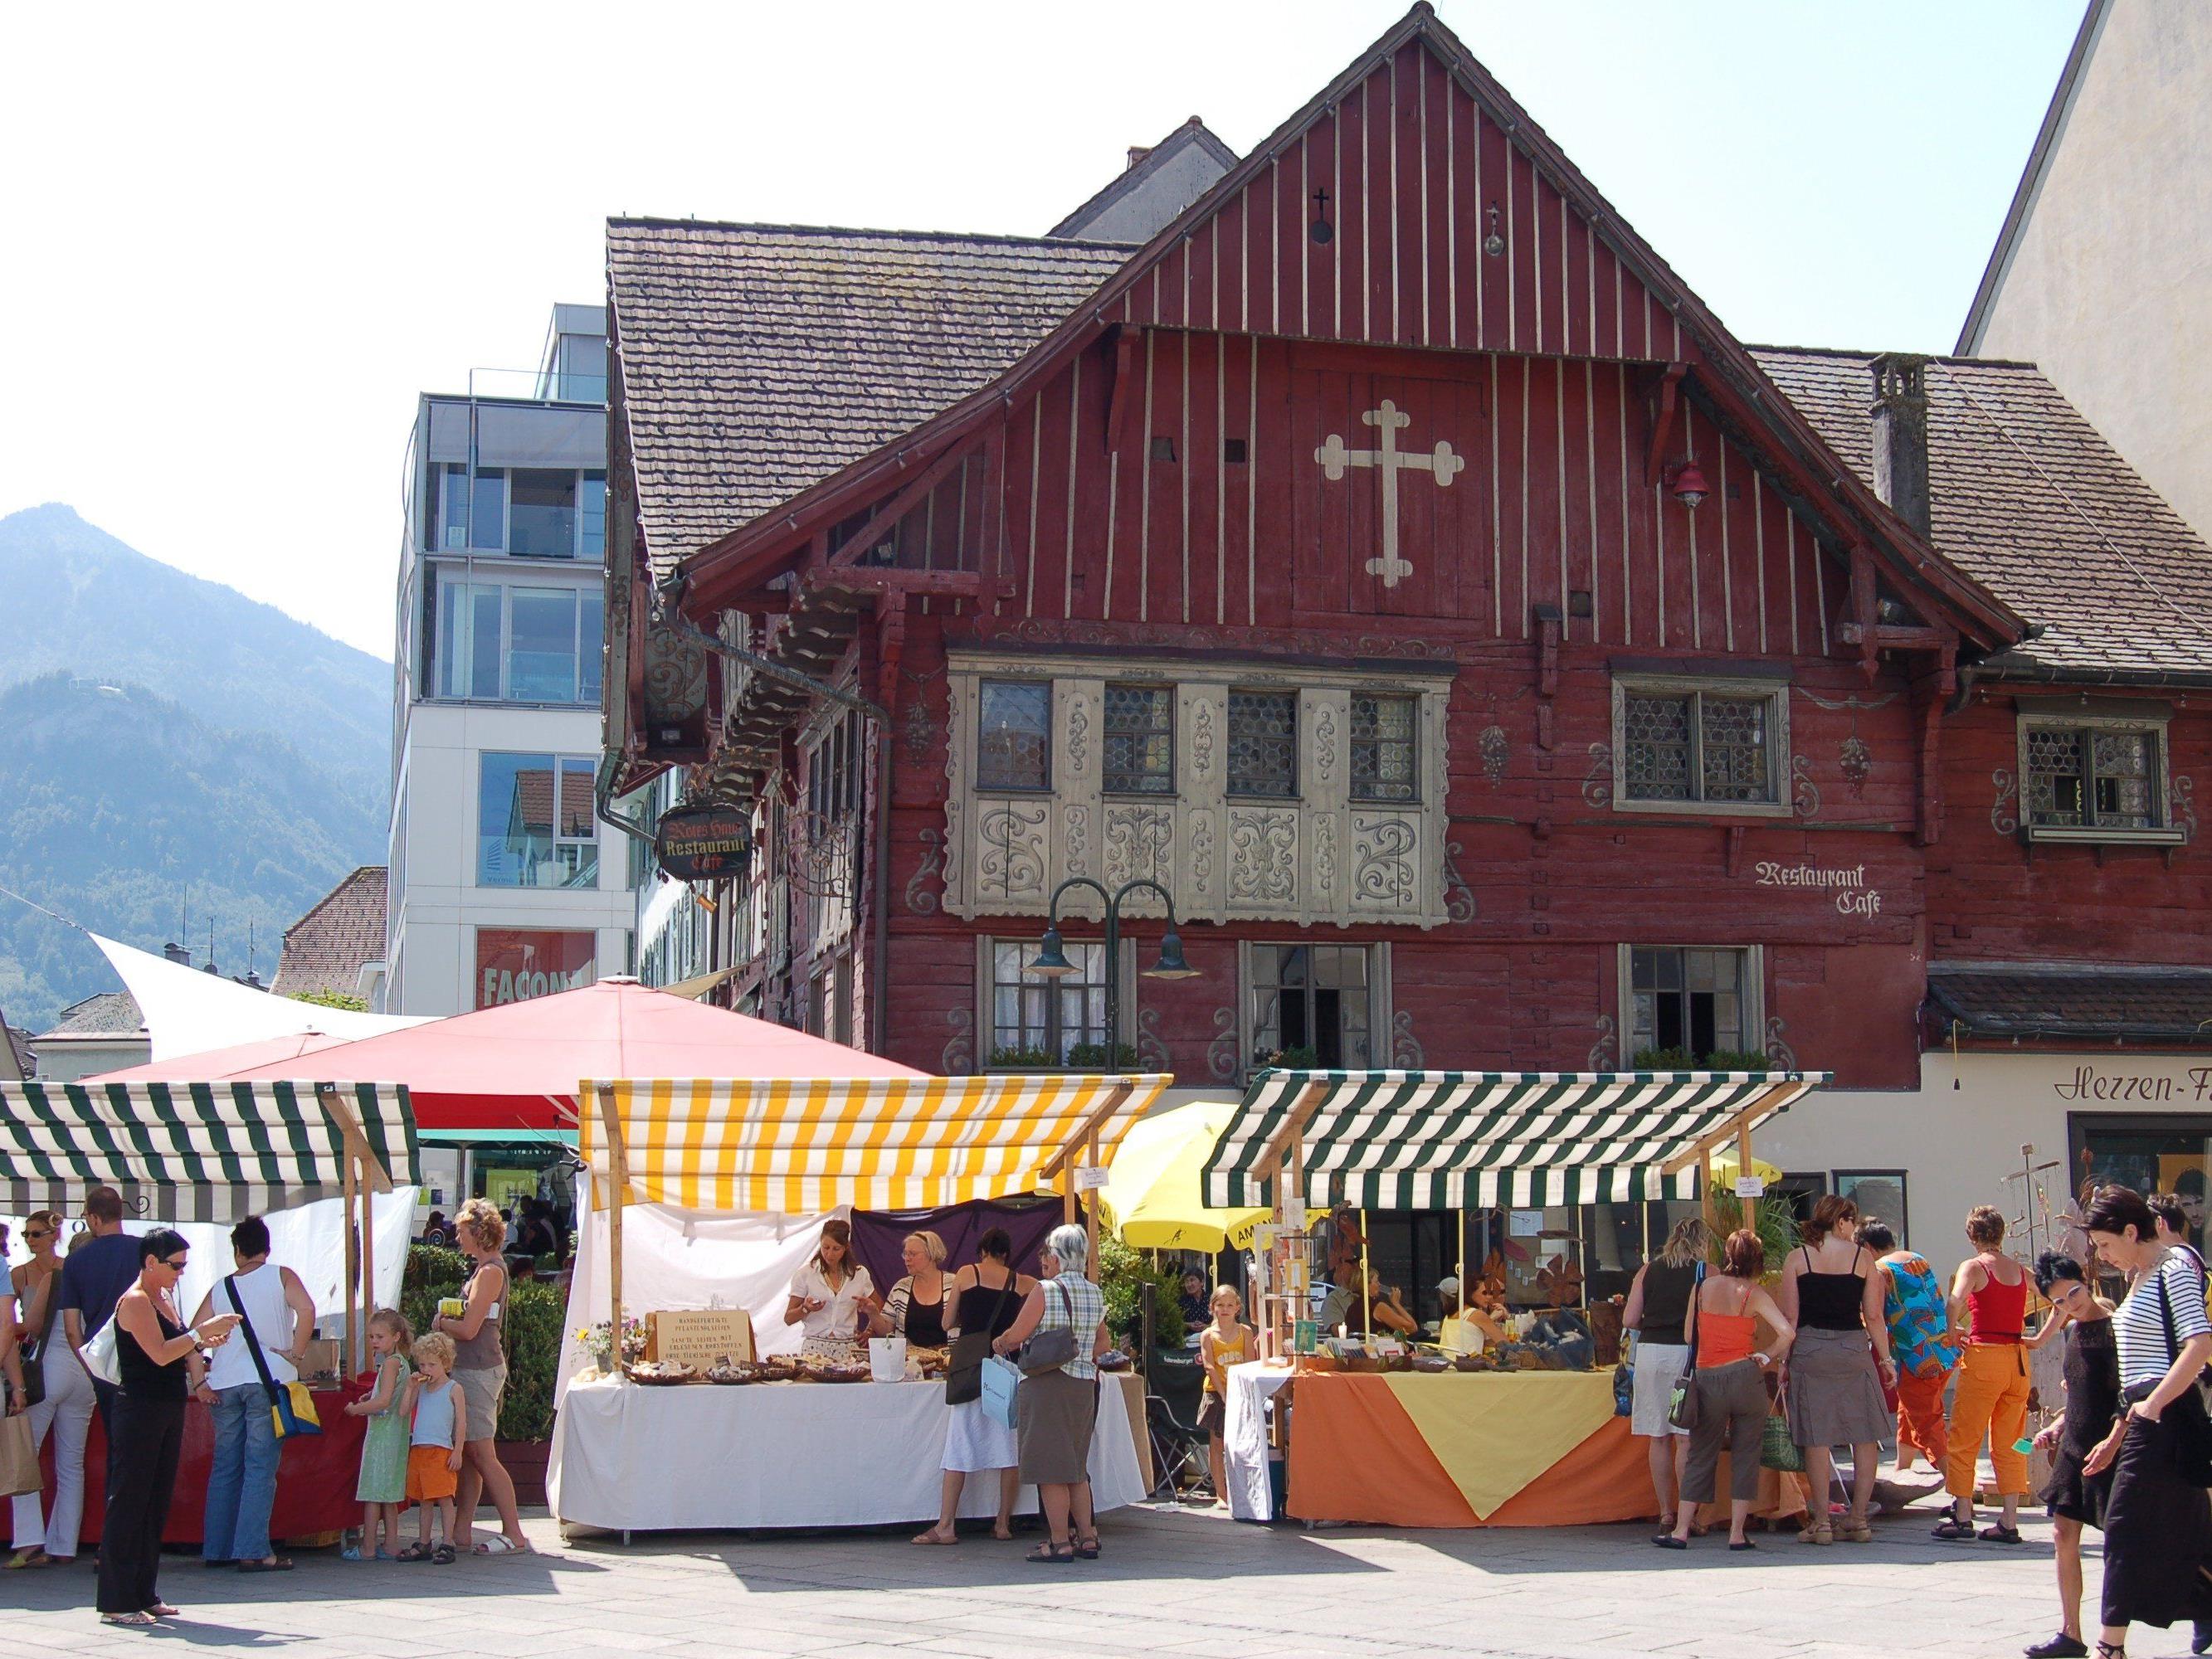 Am 31. Juli findet auf dem Marktplatz ein Kunsthandwerksmarkt statt.